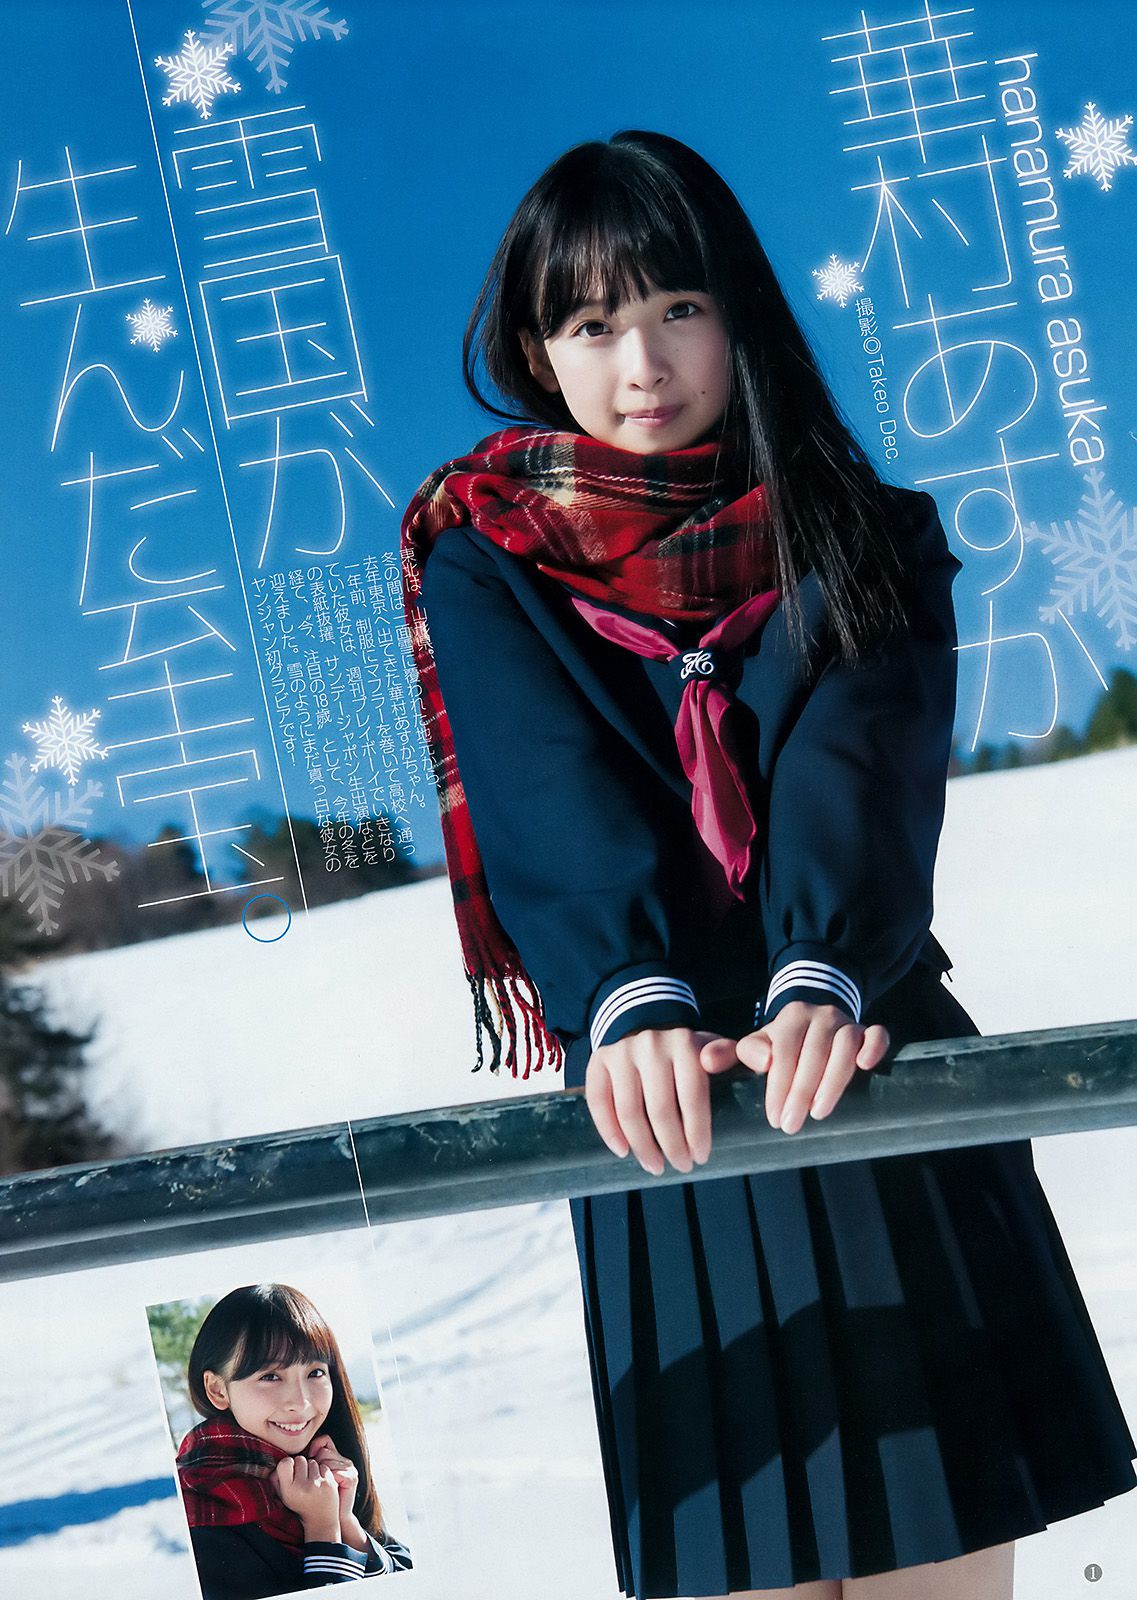 華村あすか みうらうみ [Weekly Young Jump] 2018年No.09 写真杂志